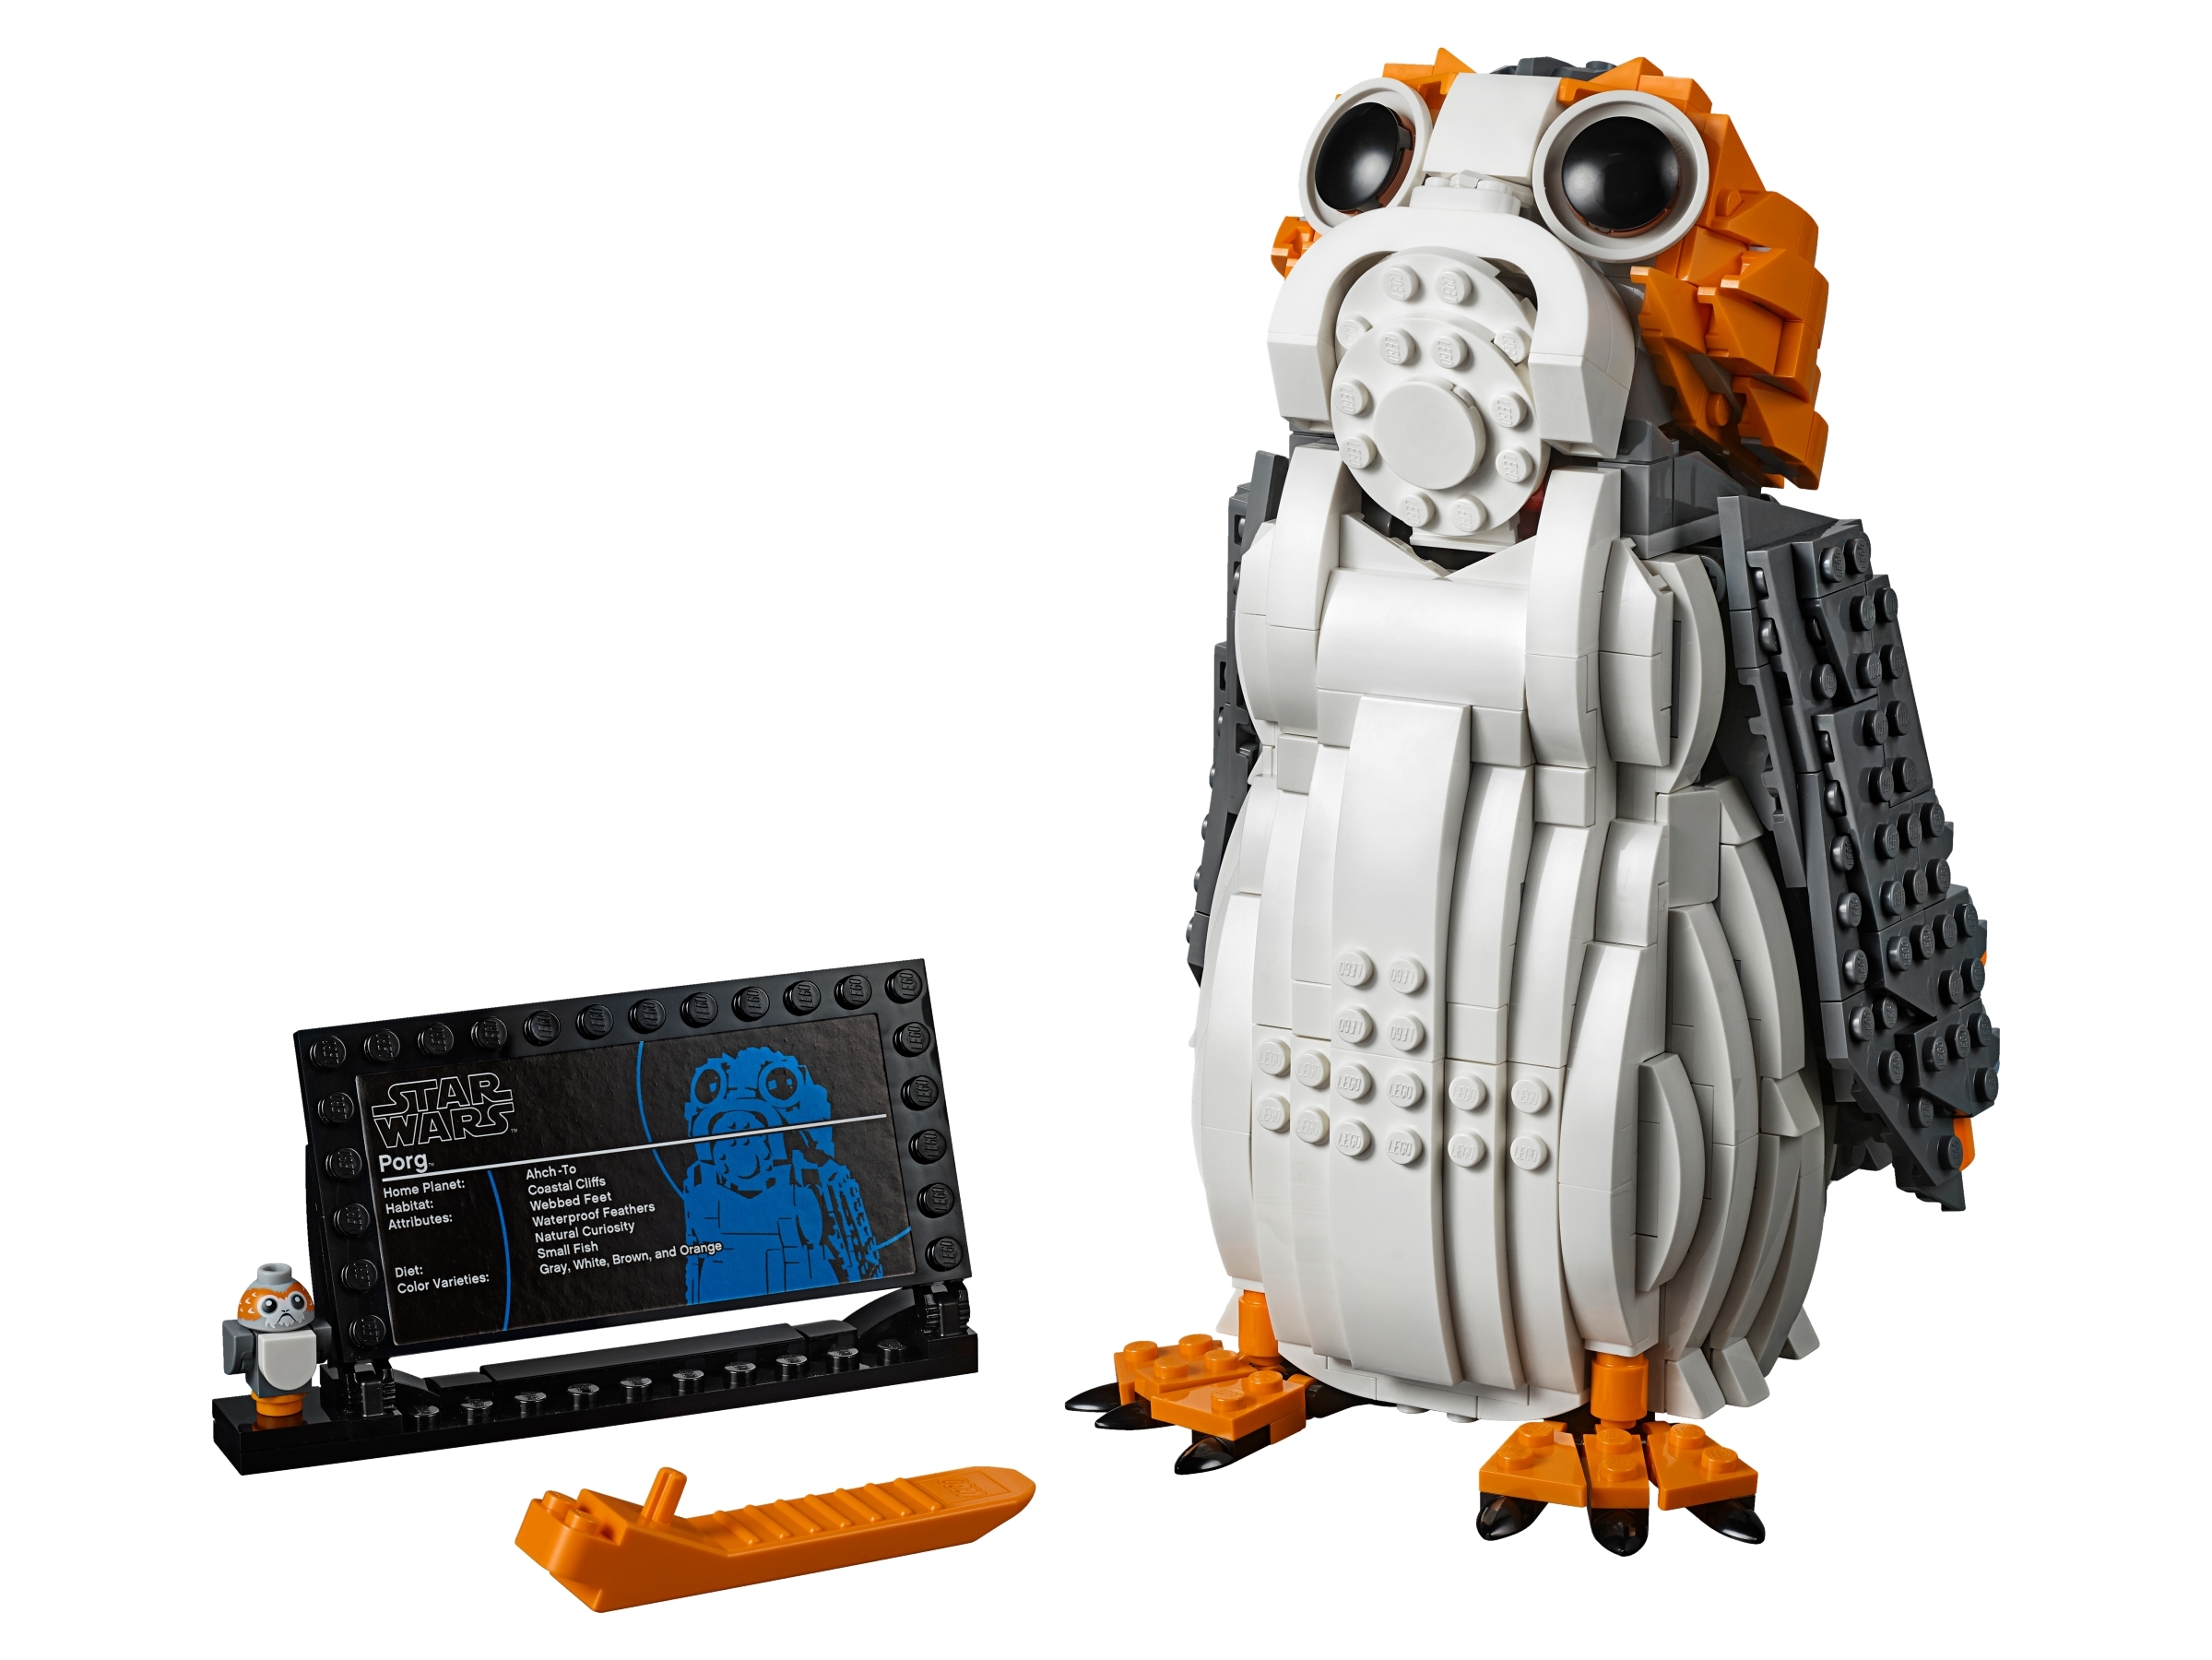 Luz LED set para 75230 Lego Star Wars porg iluminación Kit con instrucciones 